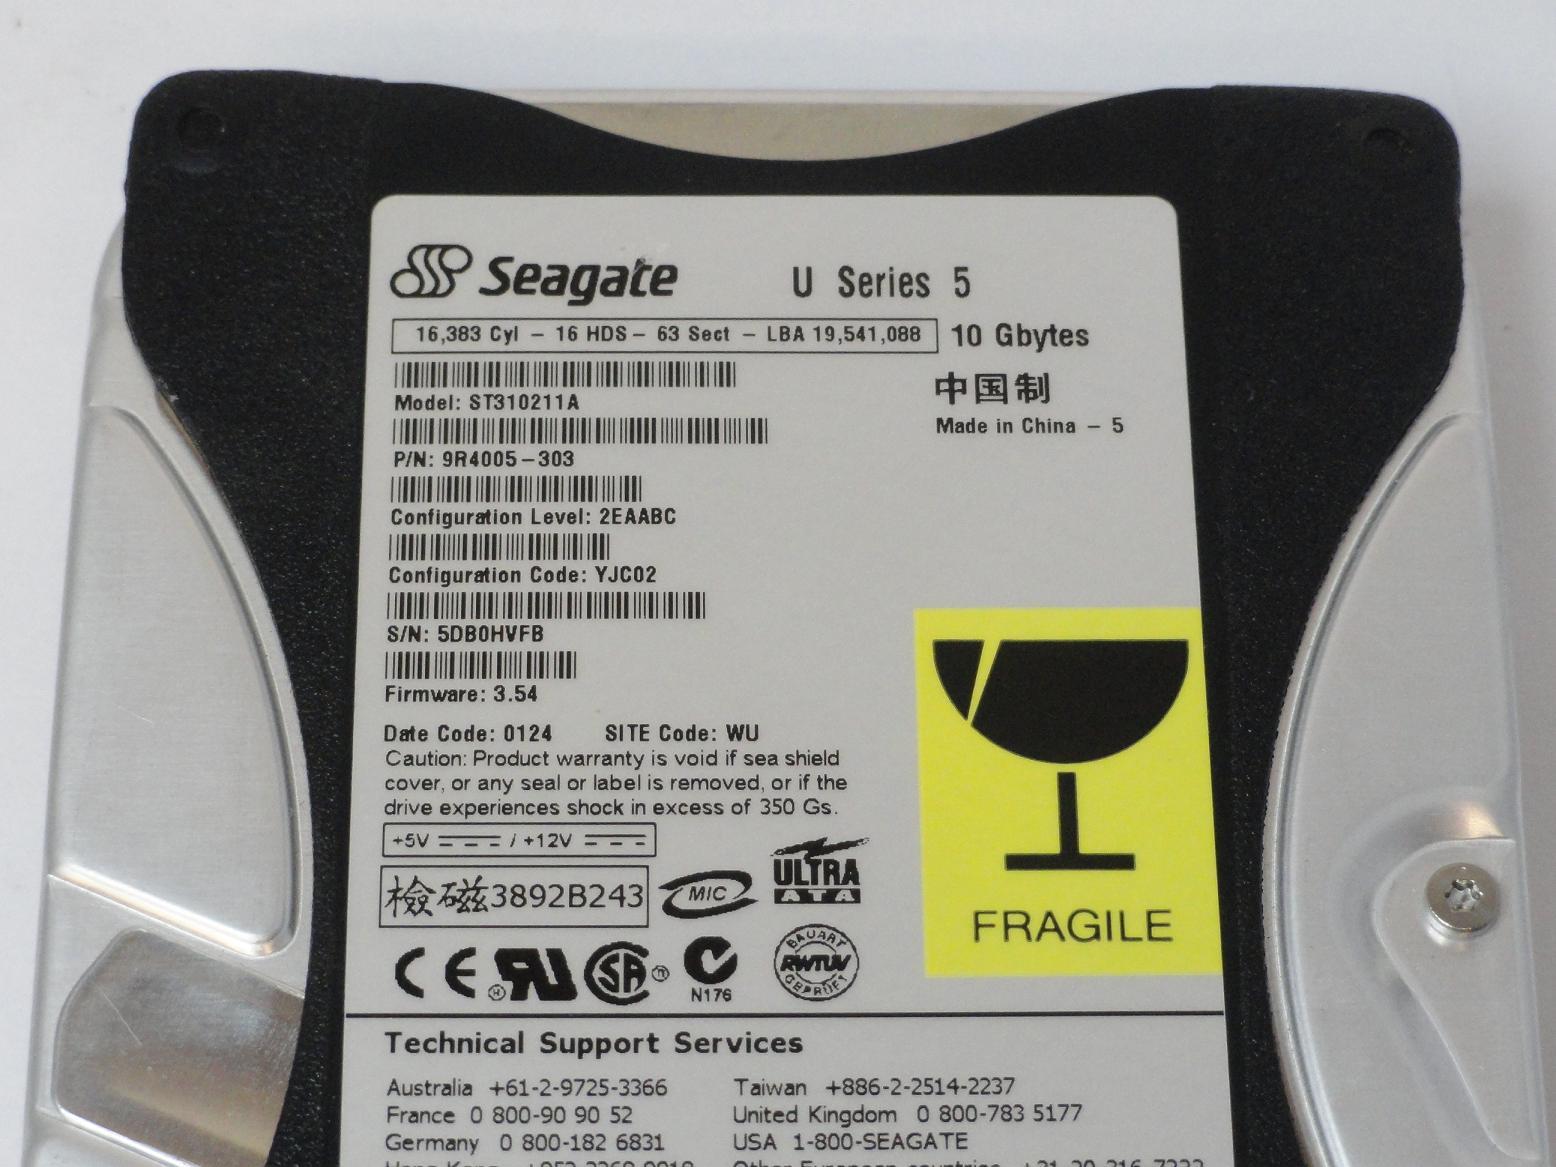 PR15159_9R4005-303_Seagate 10GB IDE 5400rpm 3.5in HDD - Image3